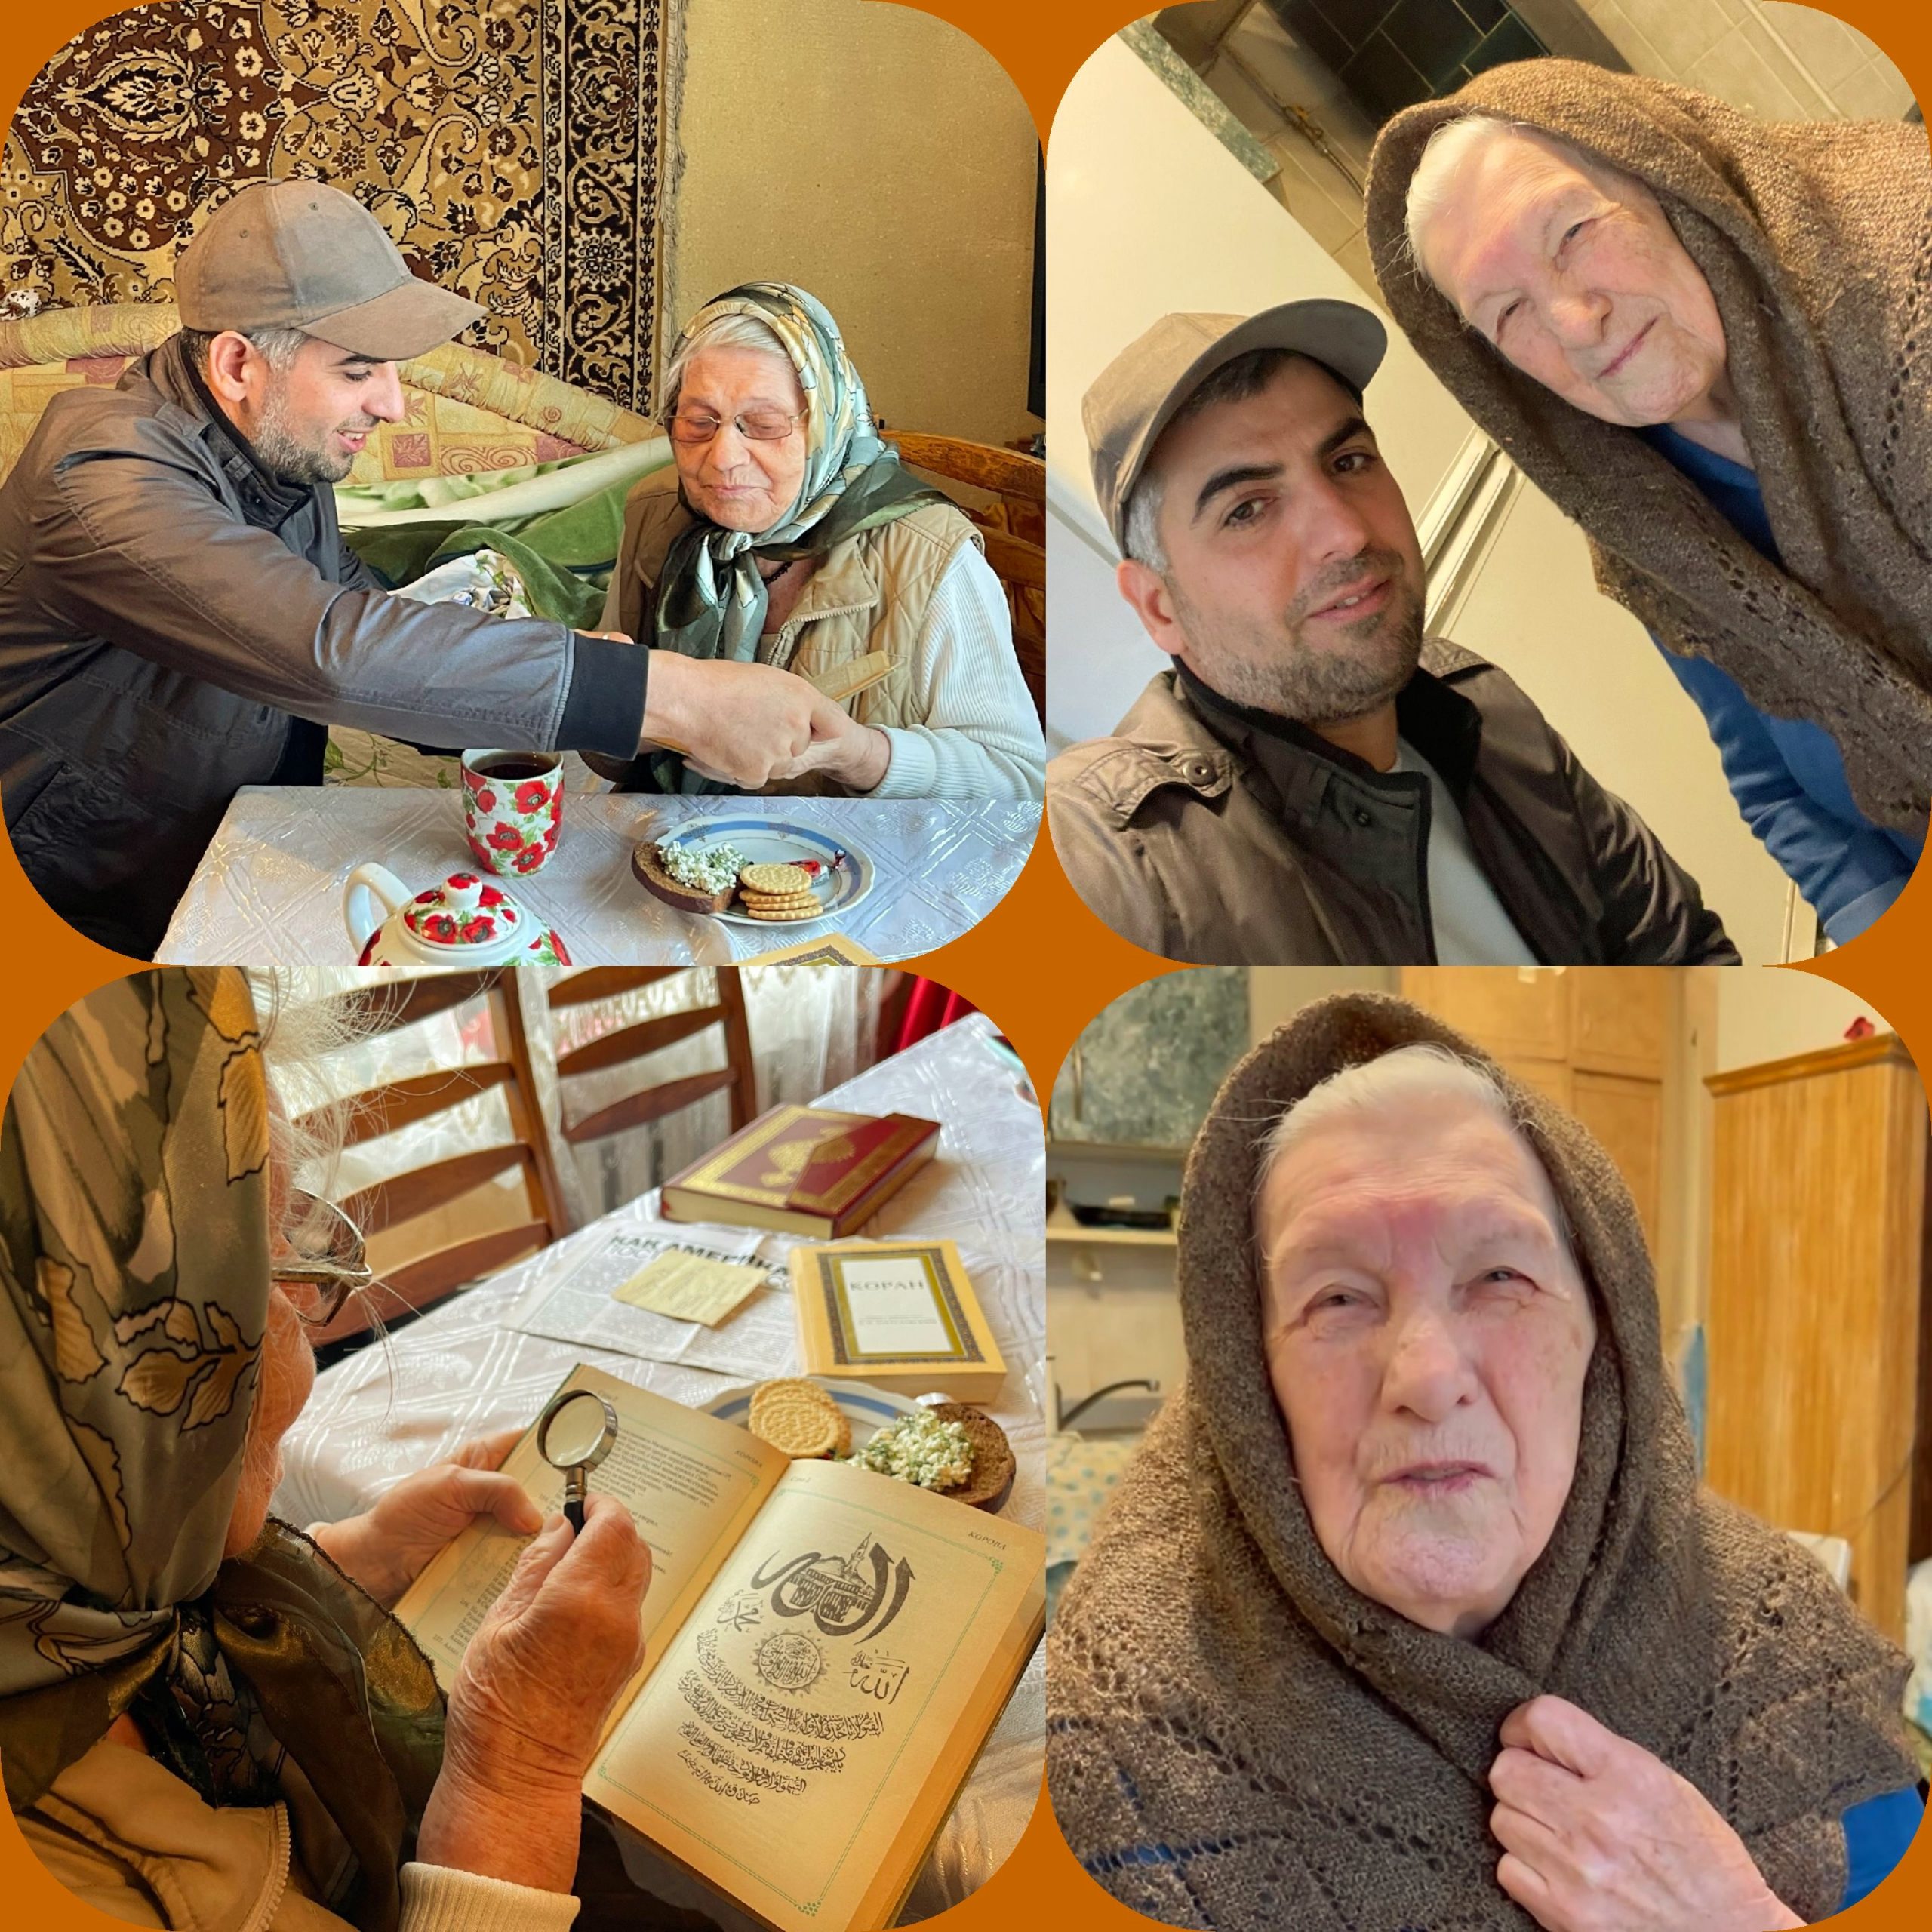 الاستماع لتلاوة القرآن من الجدة "سيدة صابرجانوفا"،97 عامًا، وسماع قراءة الكتب الدينية الإسلامية من الجدة "خالصة بهاء الدينوفا"، 92 عامًا